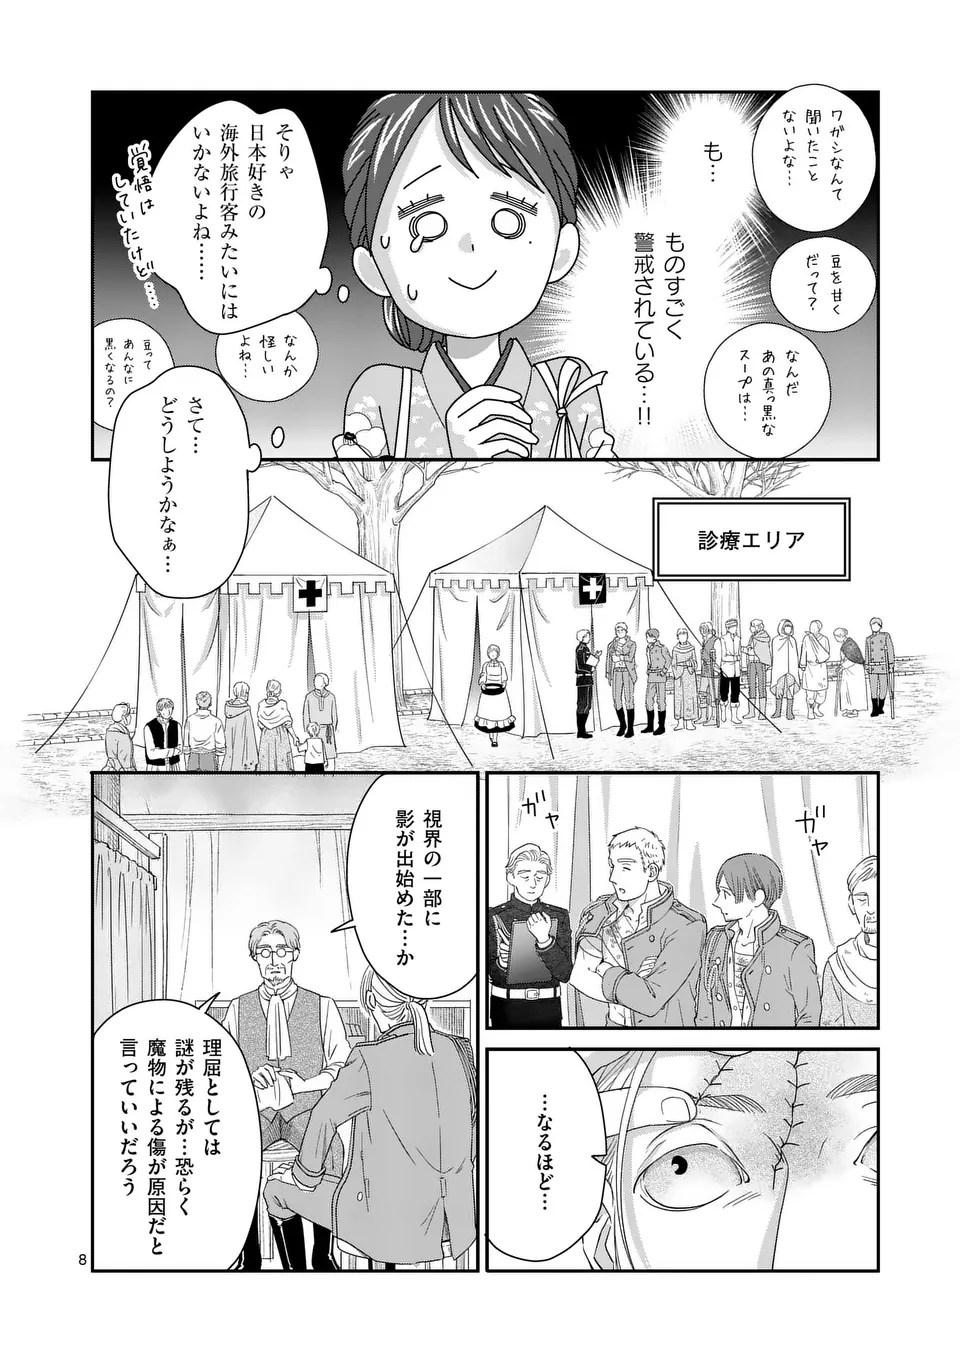 Makizoe de Isekai ni Yobidasareta no de, Sekai Kanmushi shite Wagashi Tsukurimasu - Chapter 5 - Page 8